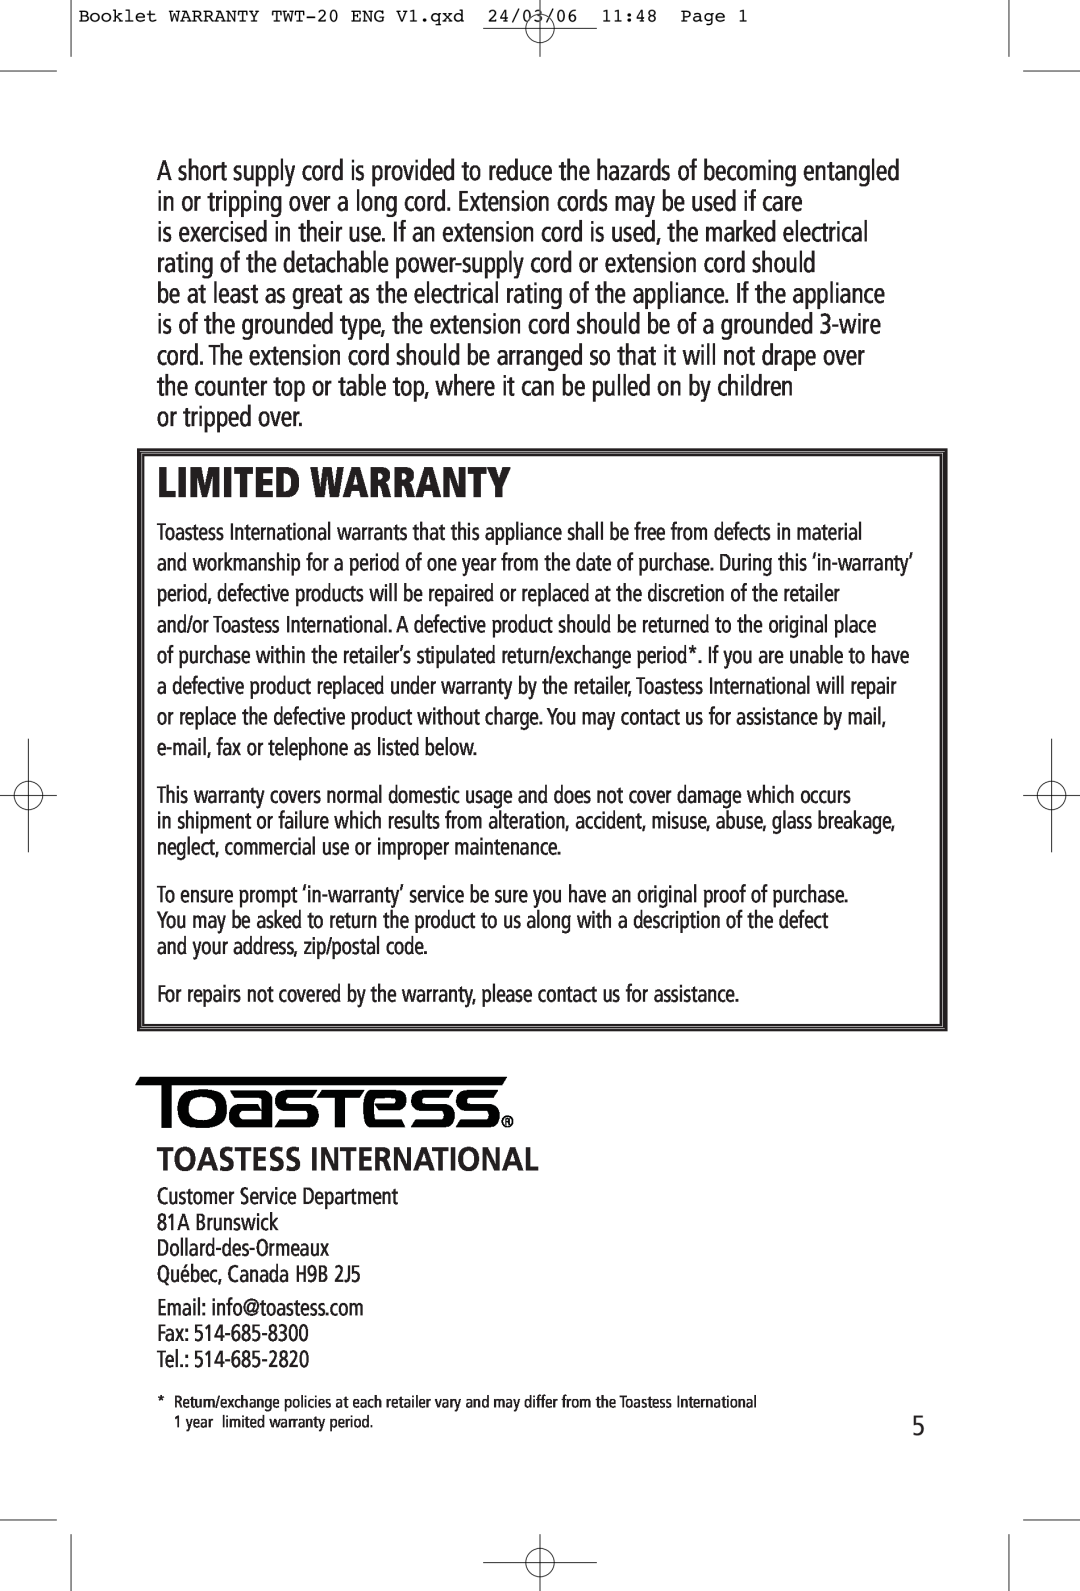 Toastess TWT20 manual Toastess International, Limited Warranty 